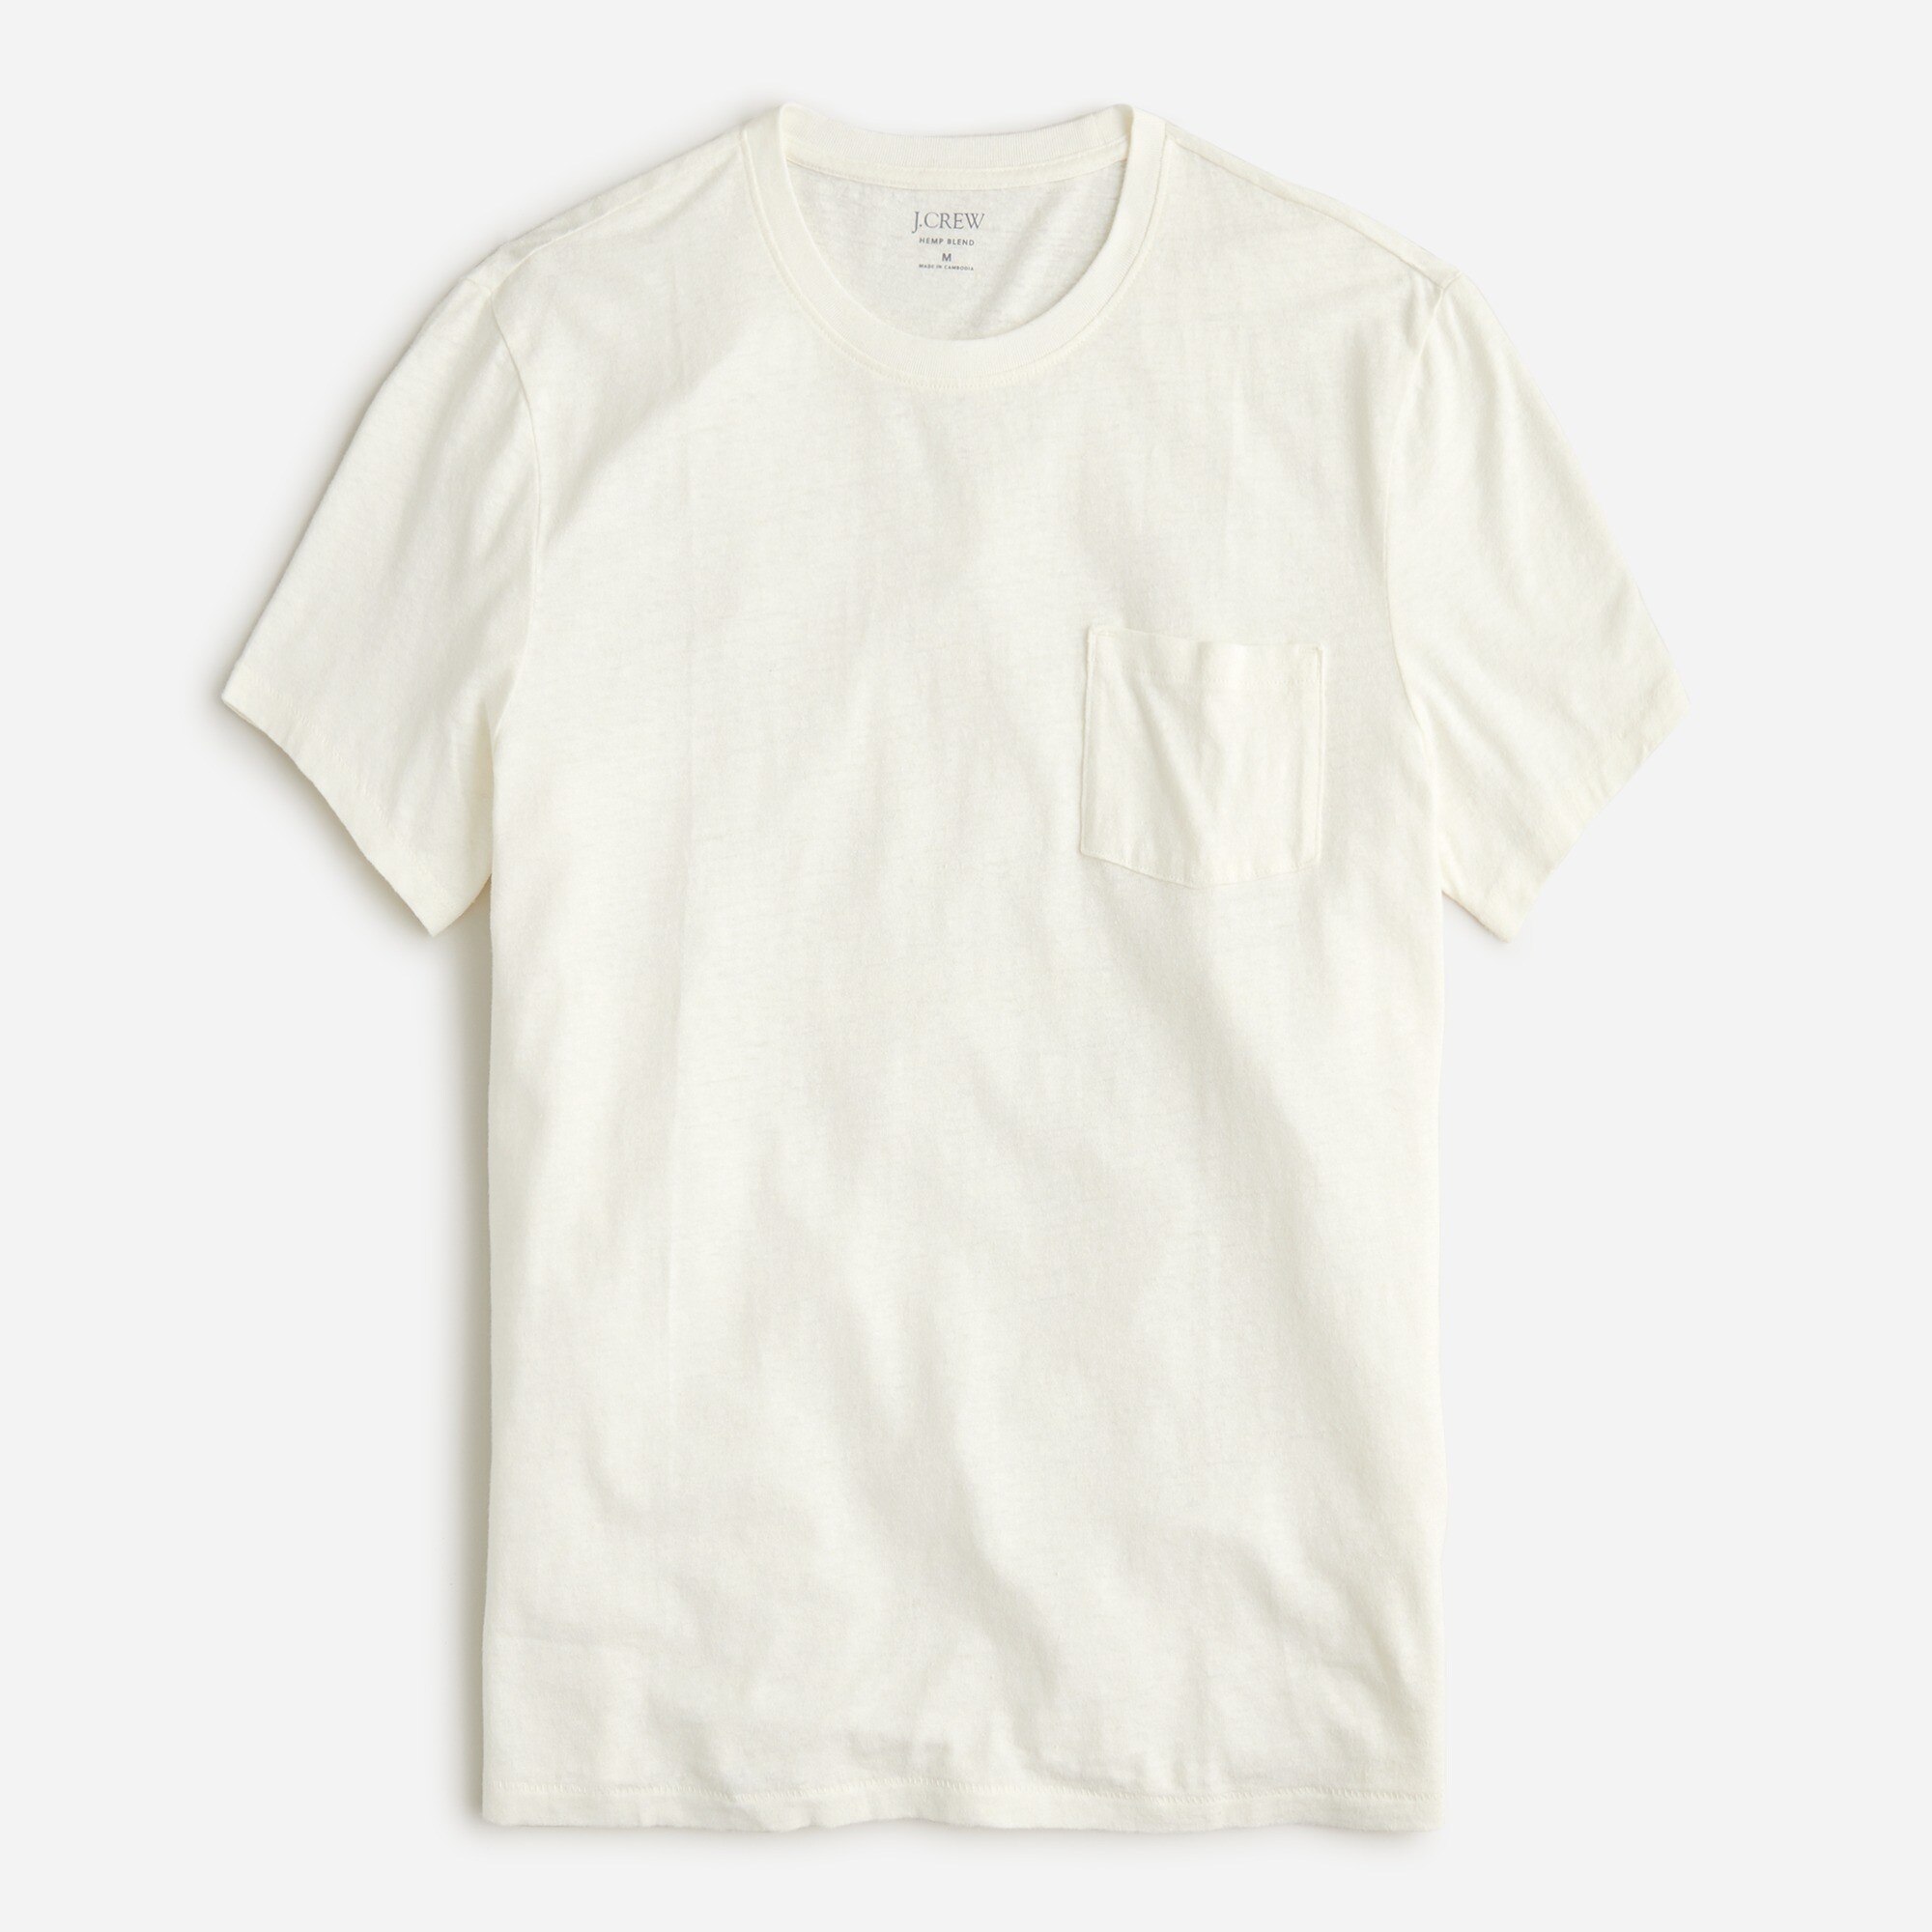  Hemp-organic cotton-blend pocket T-shirt